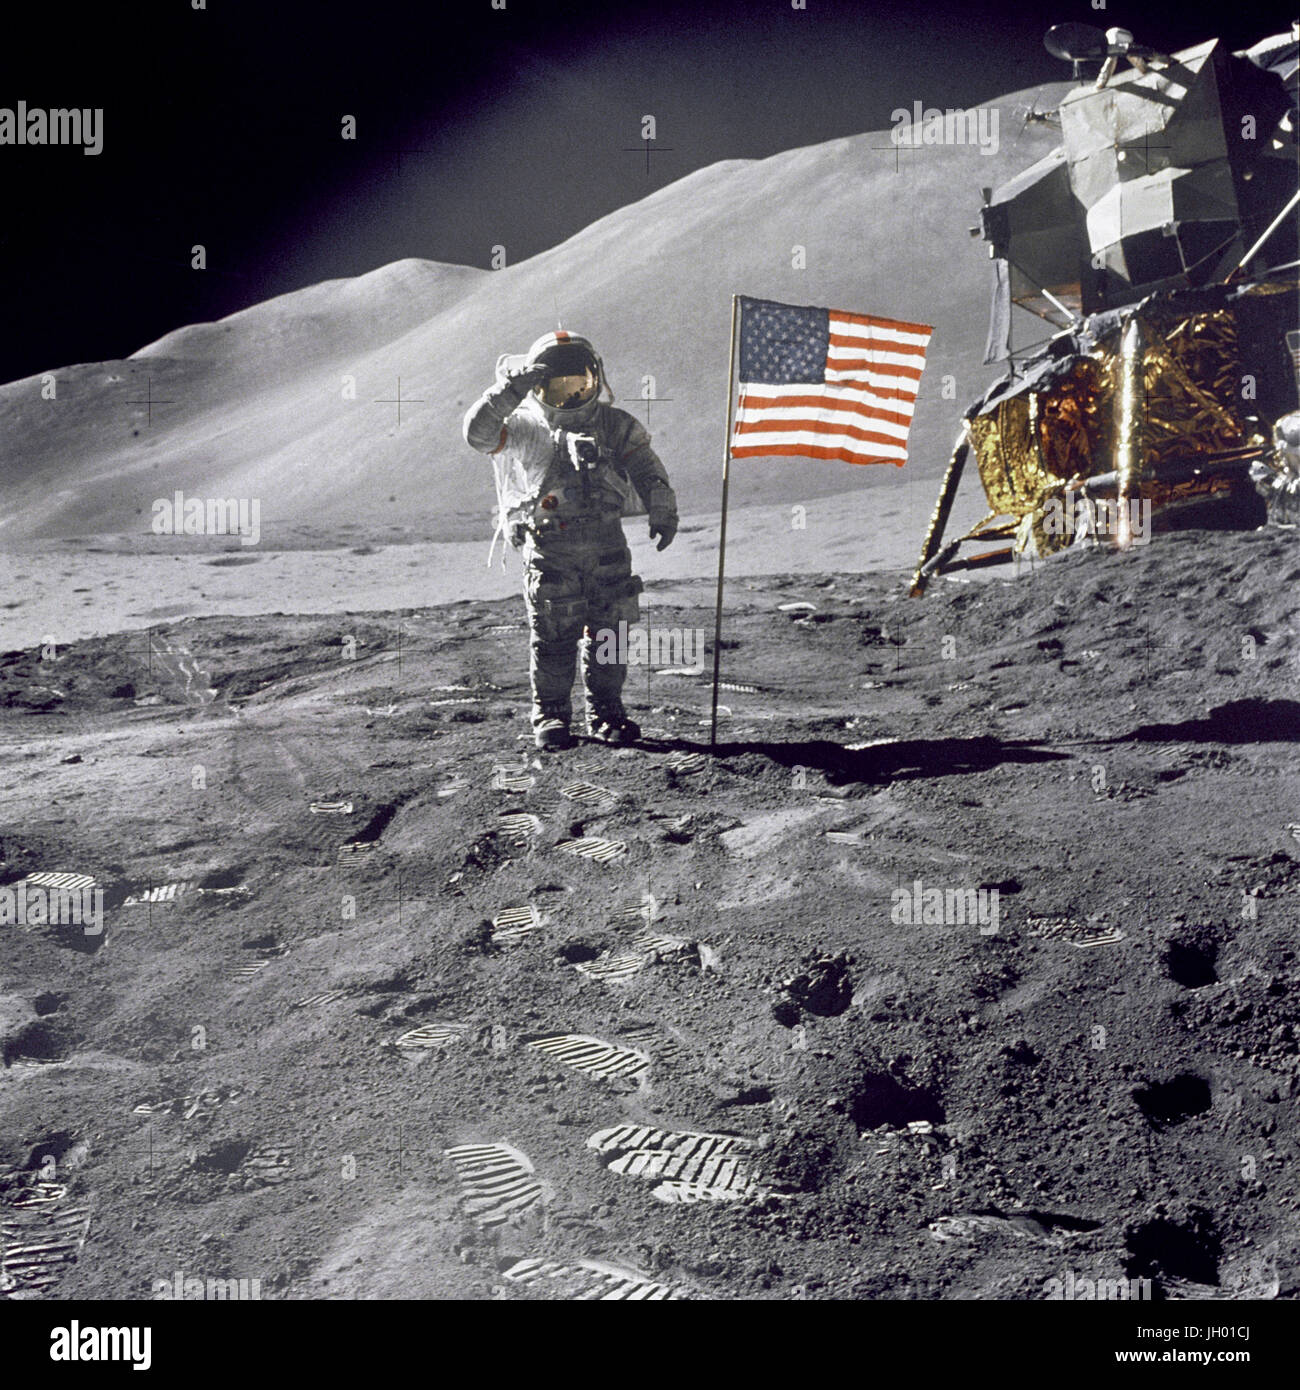 Astronaut David, Kommandant, gibt einen militärischen Gruß im stehen neben der bereitgestellten US Flagge während der Apollo 15 lunar Oberfläche Extravehicular Activity (EVA) am Landeplatz Hadley-Apenninen. Die Flagge wurde gegen Ende des EVA-2 eingesetzt. Die Mondlandefähre "Falcon" ist teilweise sichtbar auf der rechten Seite. Hadley Delta im Hintergrund erhebt sich etwa 4.000 Metern (etwa 13.124 Fuß) über der Ebene. Die Basis des Berges ist ungefähr 5 Kilometer (ca. 3 Landmeilen) entfernt. Fotograf: NASA James B. Irwin Stockfoto